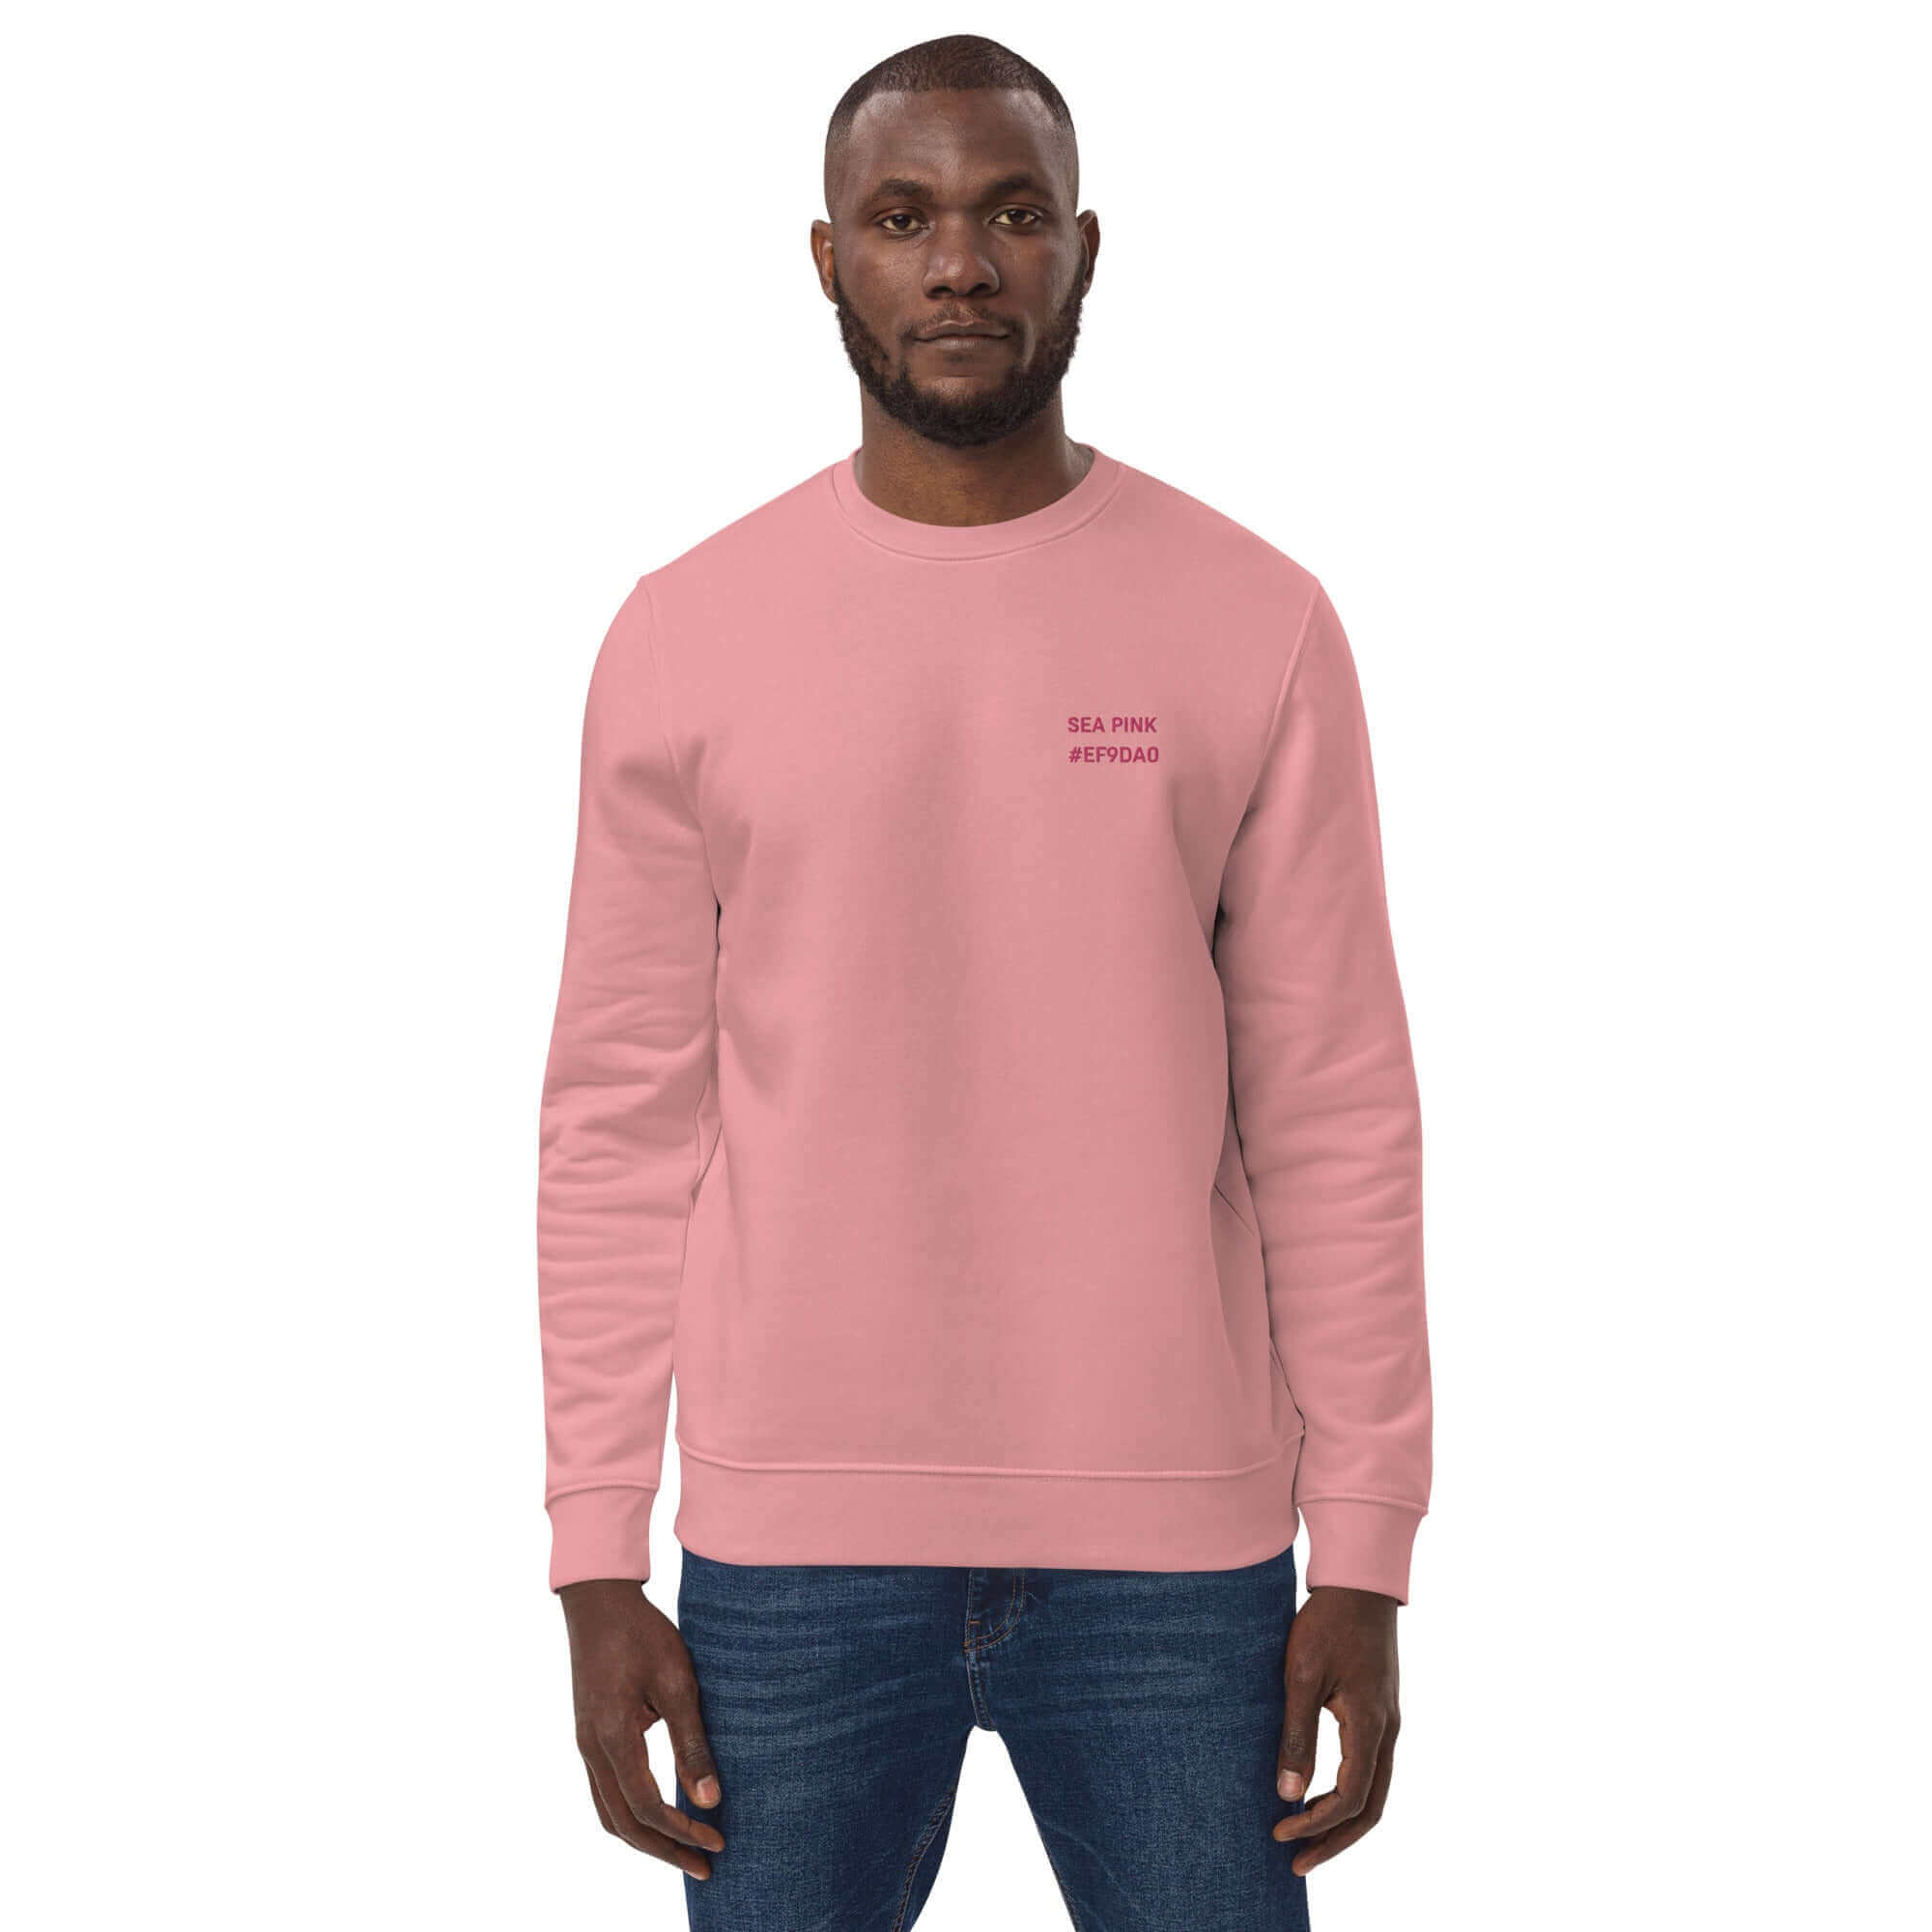 Heavy Sea Pink Sweatshirt, #EF9DA0